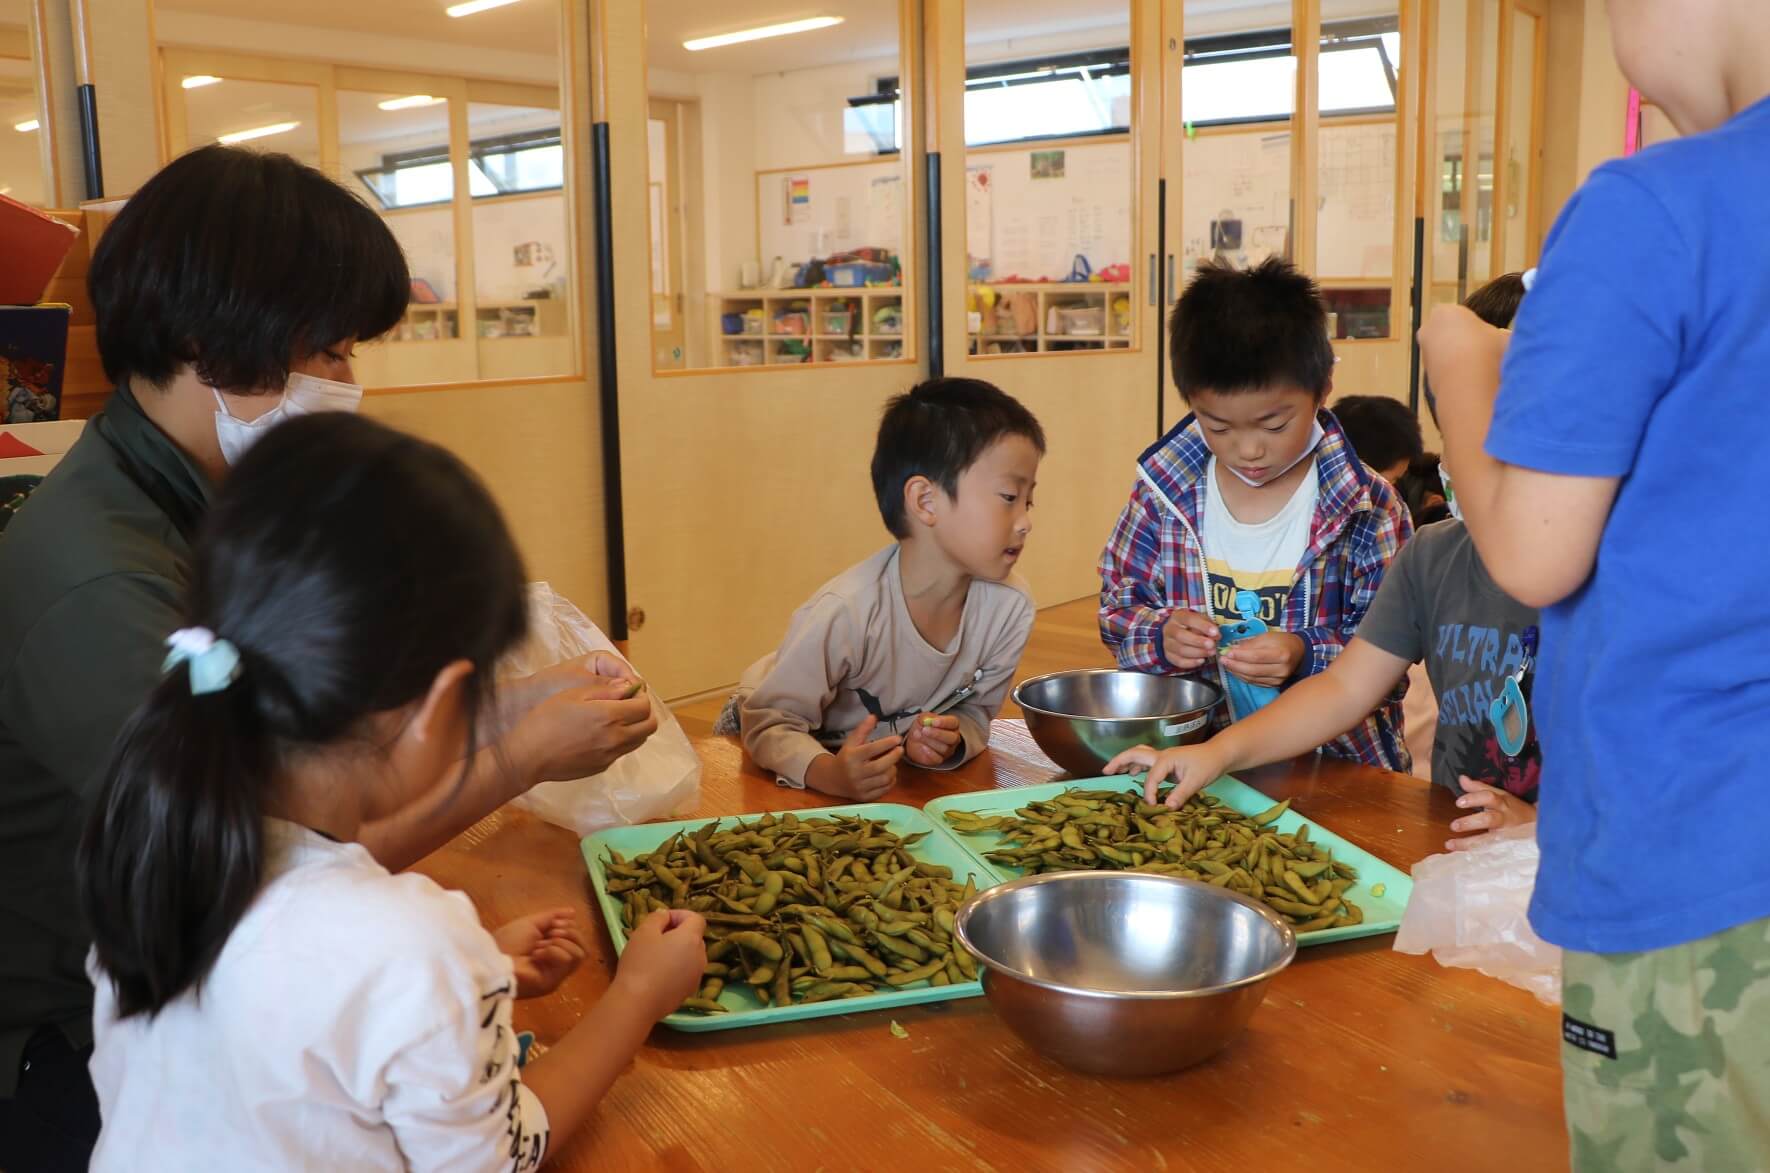 枝豆の香りや感触に素直に反応する子どもたち